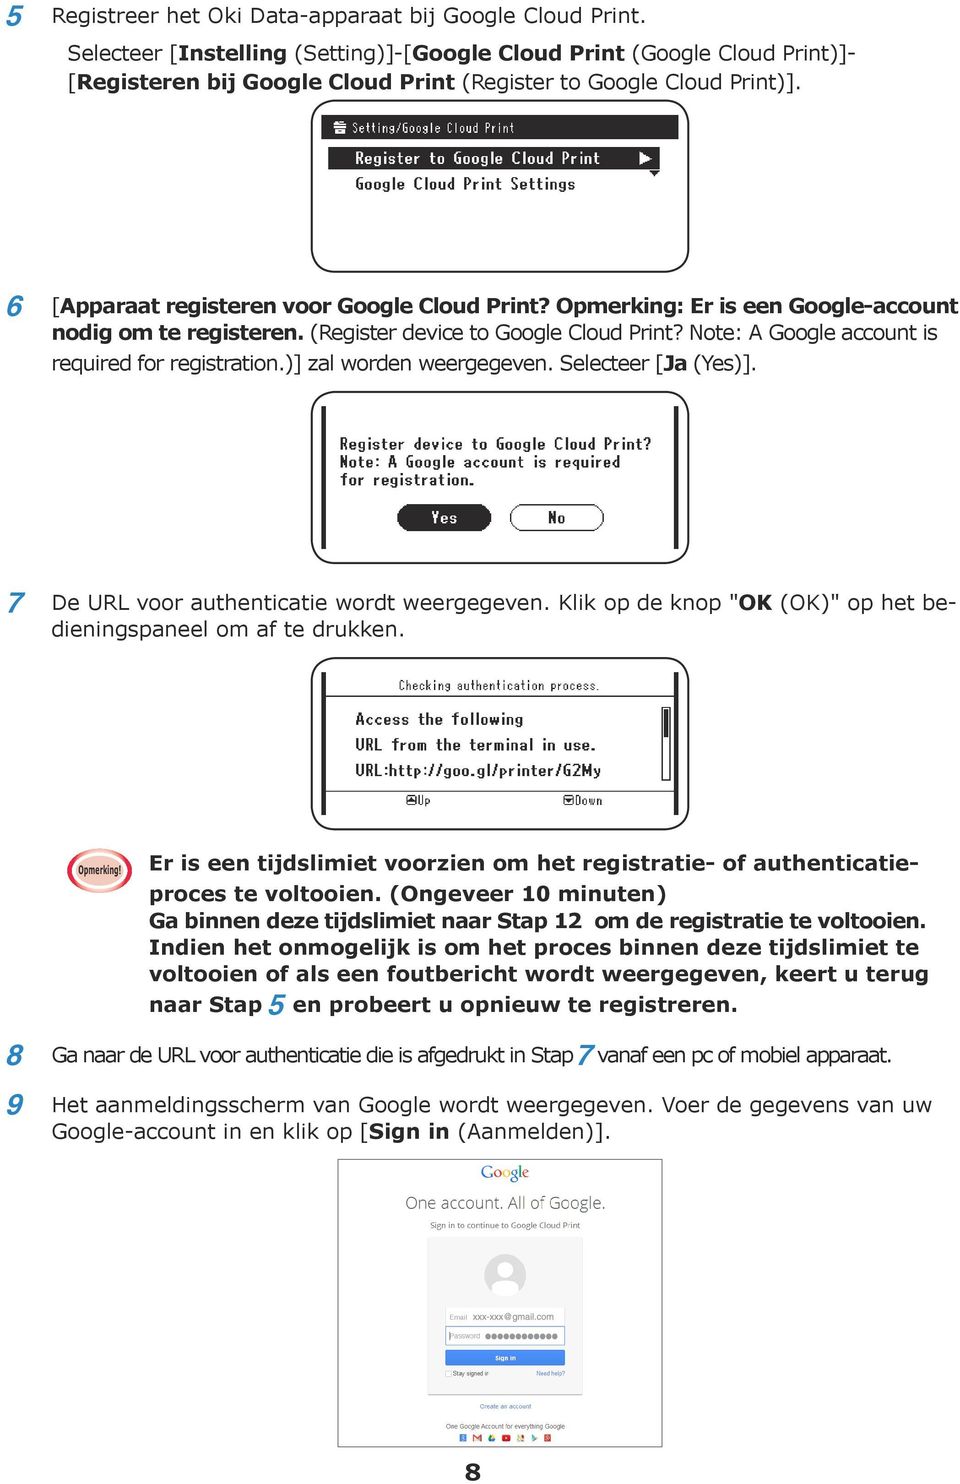 Opmerking: Er is een Google-account nodig om te registeren. (Register device to Google Cloud Print? Note: A Google account is required for registration.)] zal worden weergegeven. Selecteer [Ja (Yes)].